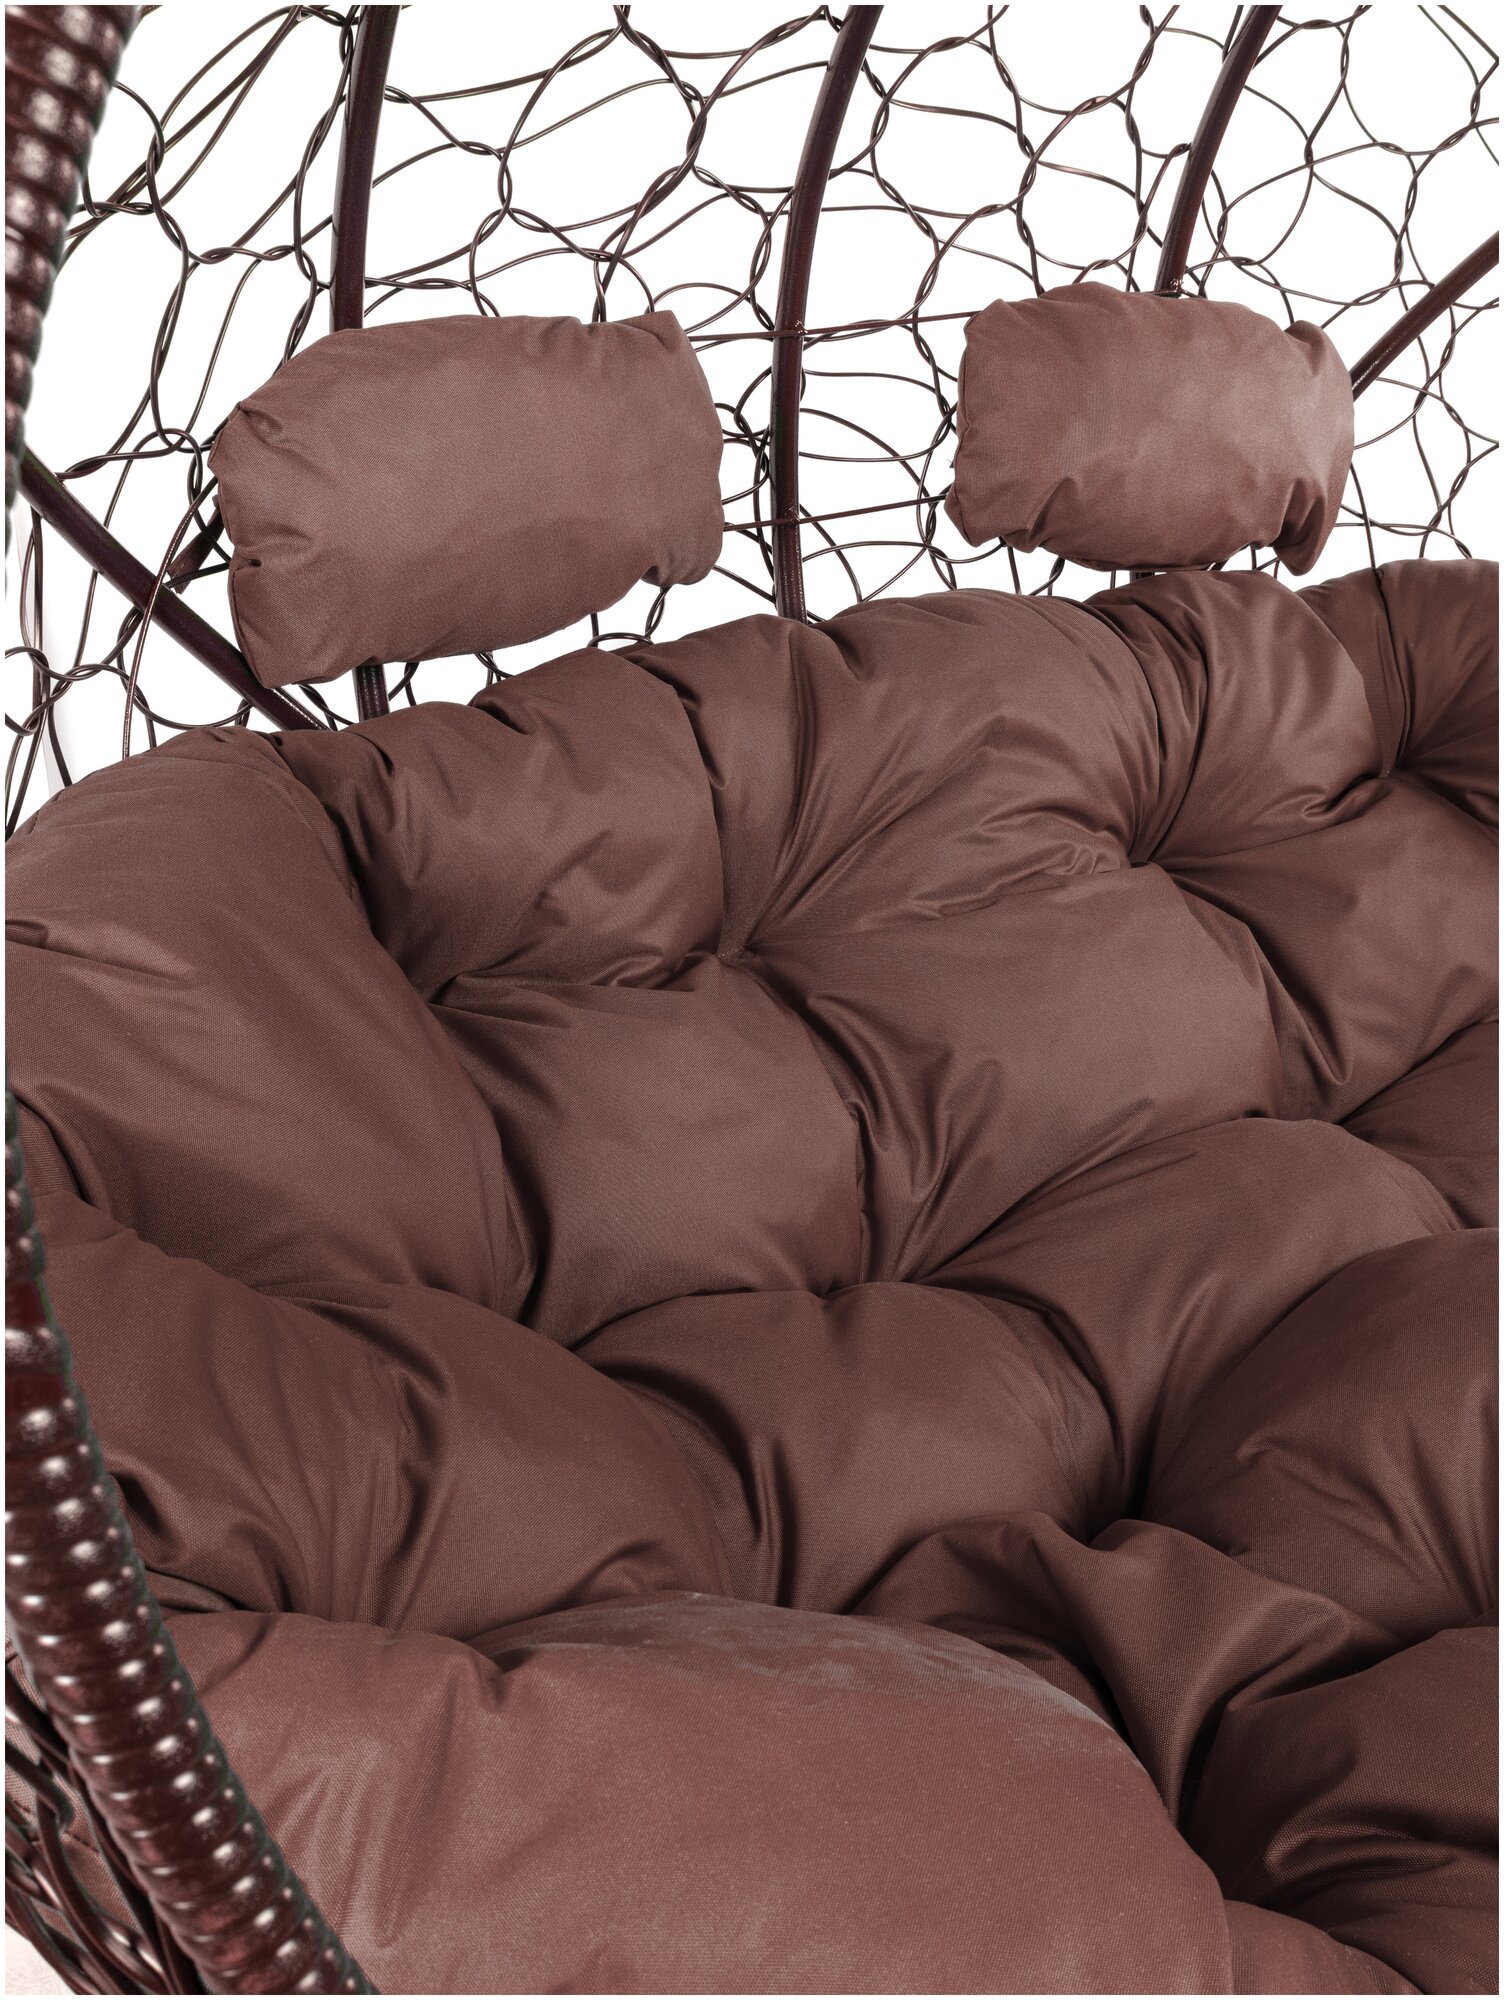 Диван M-Group лежебока на подставке ротанг коричневый, коричневая подушка - фотография № 15